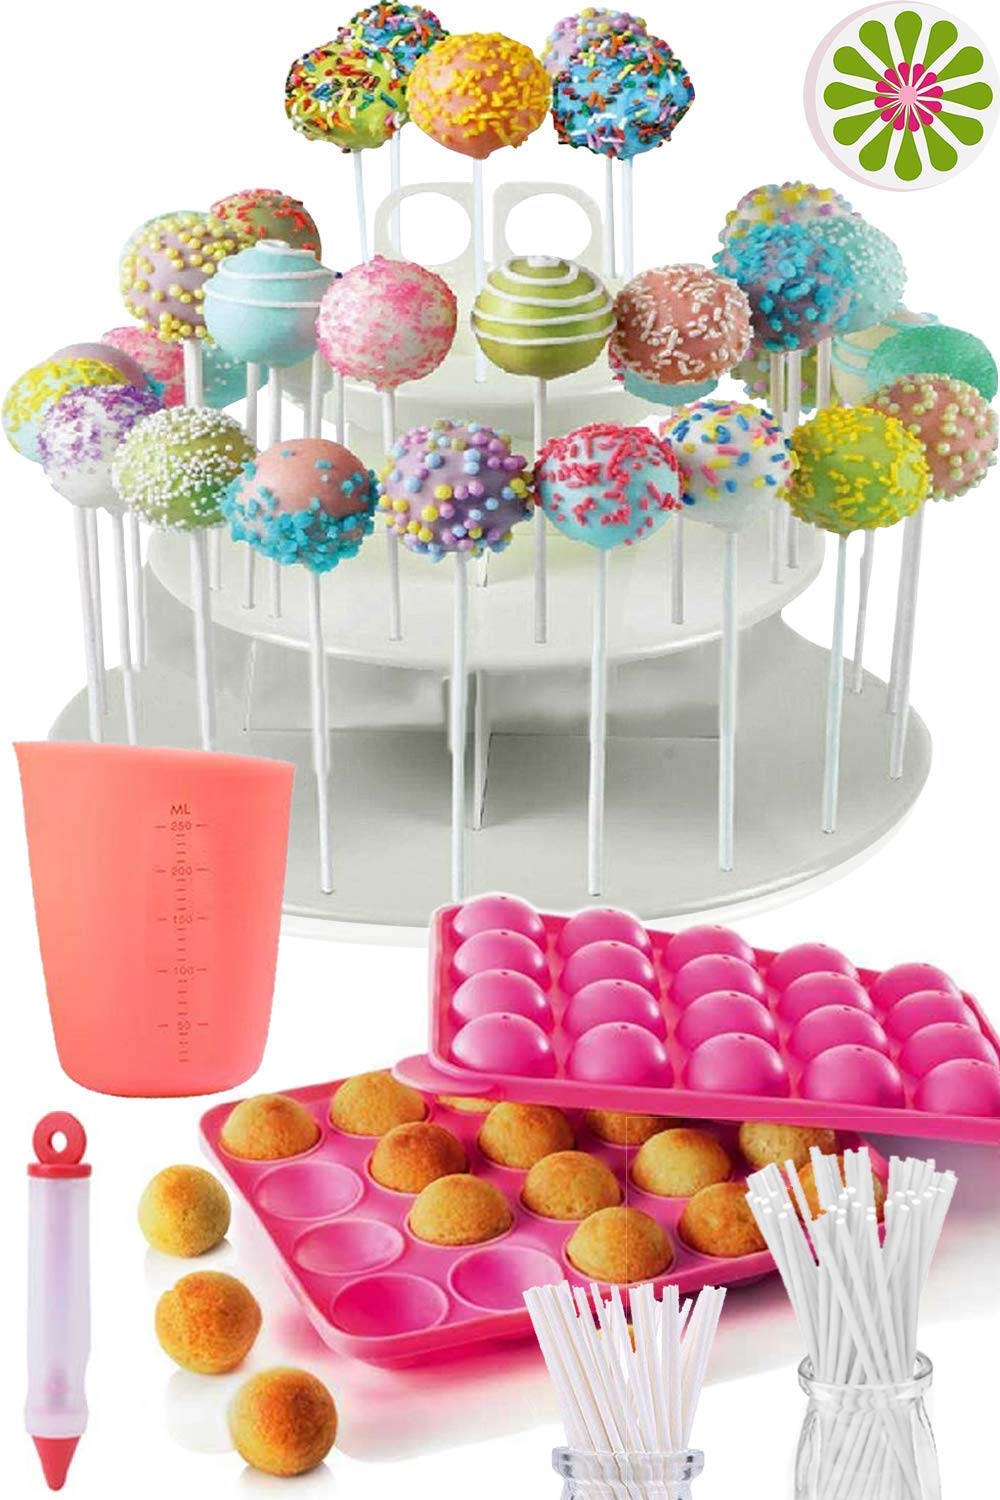 Hướng dẫn how to decorate cake pops 10 cách trang trí bánh cake pops độc đáo